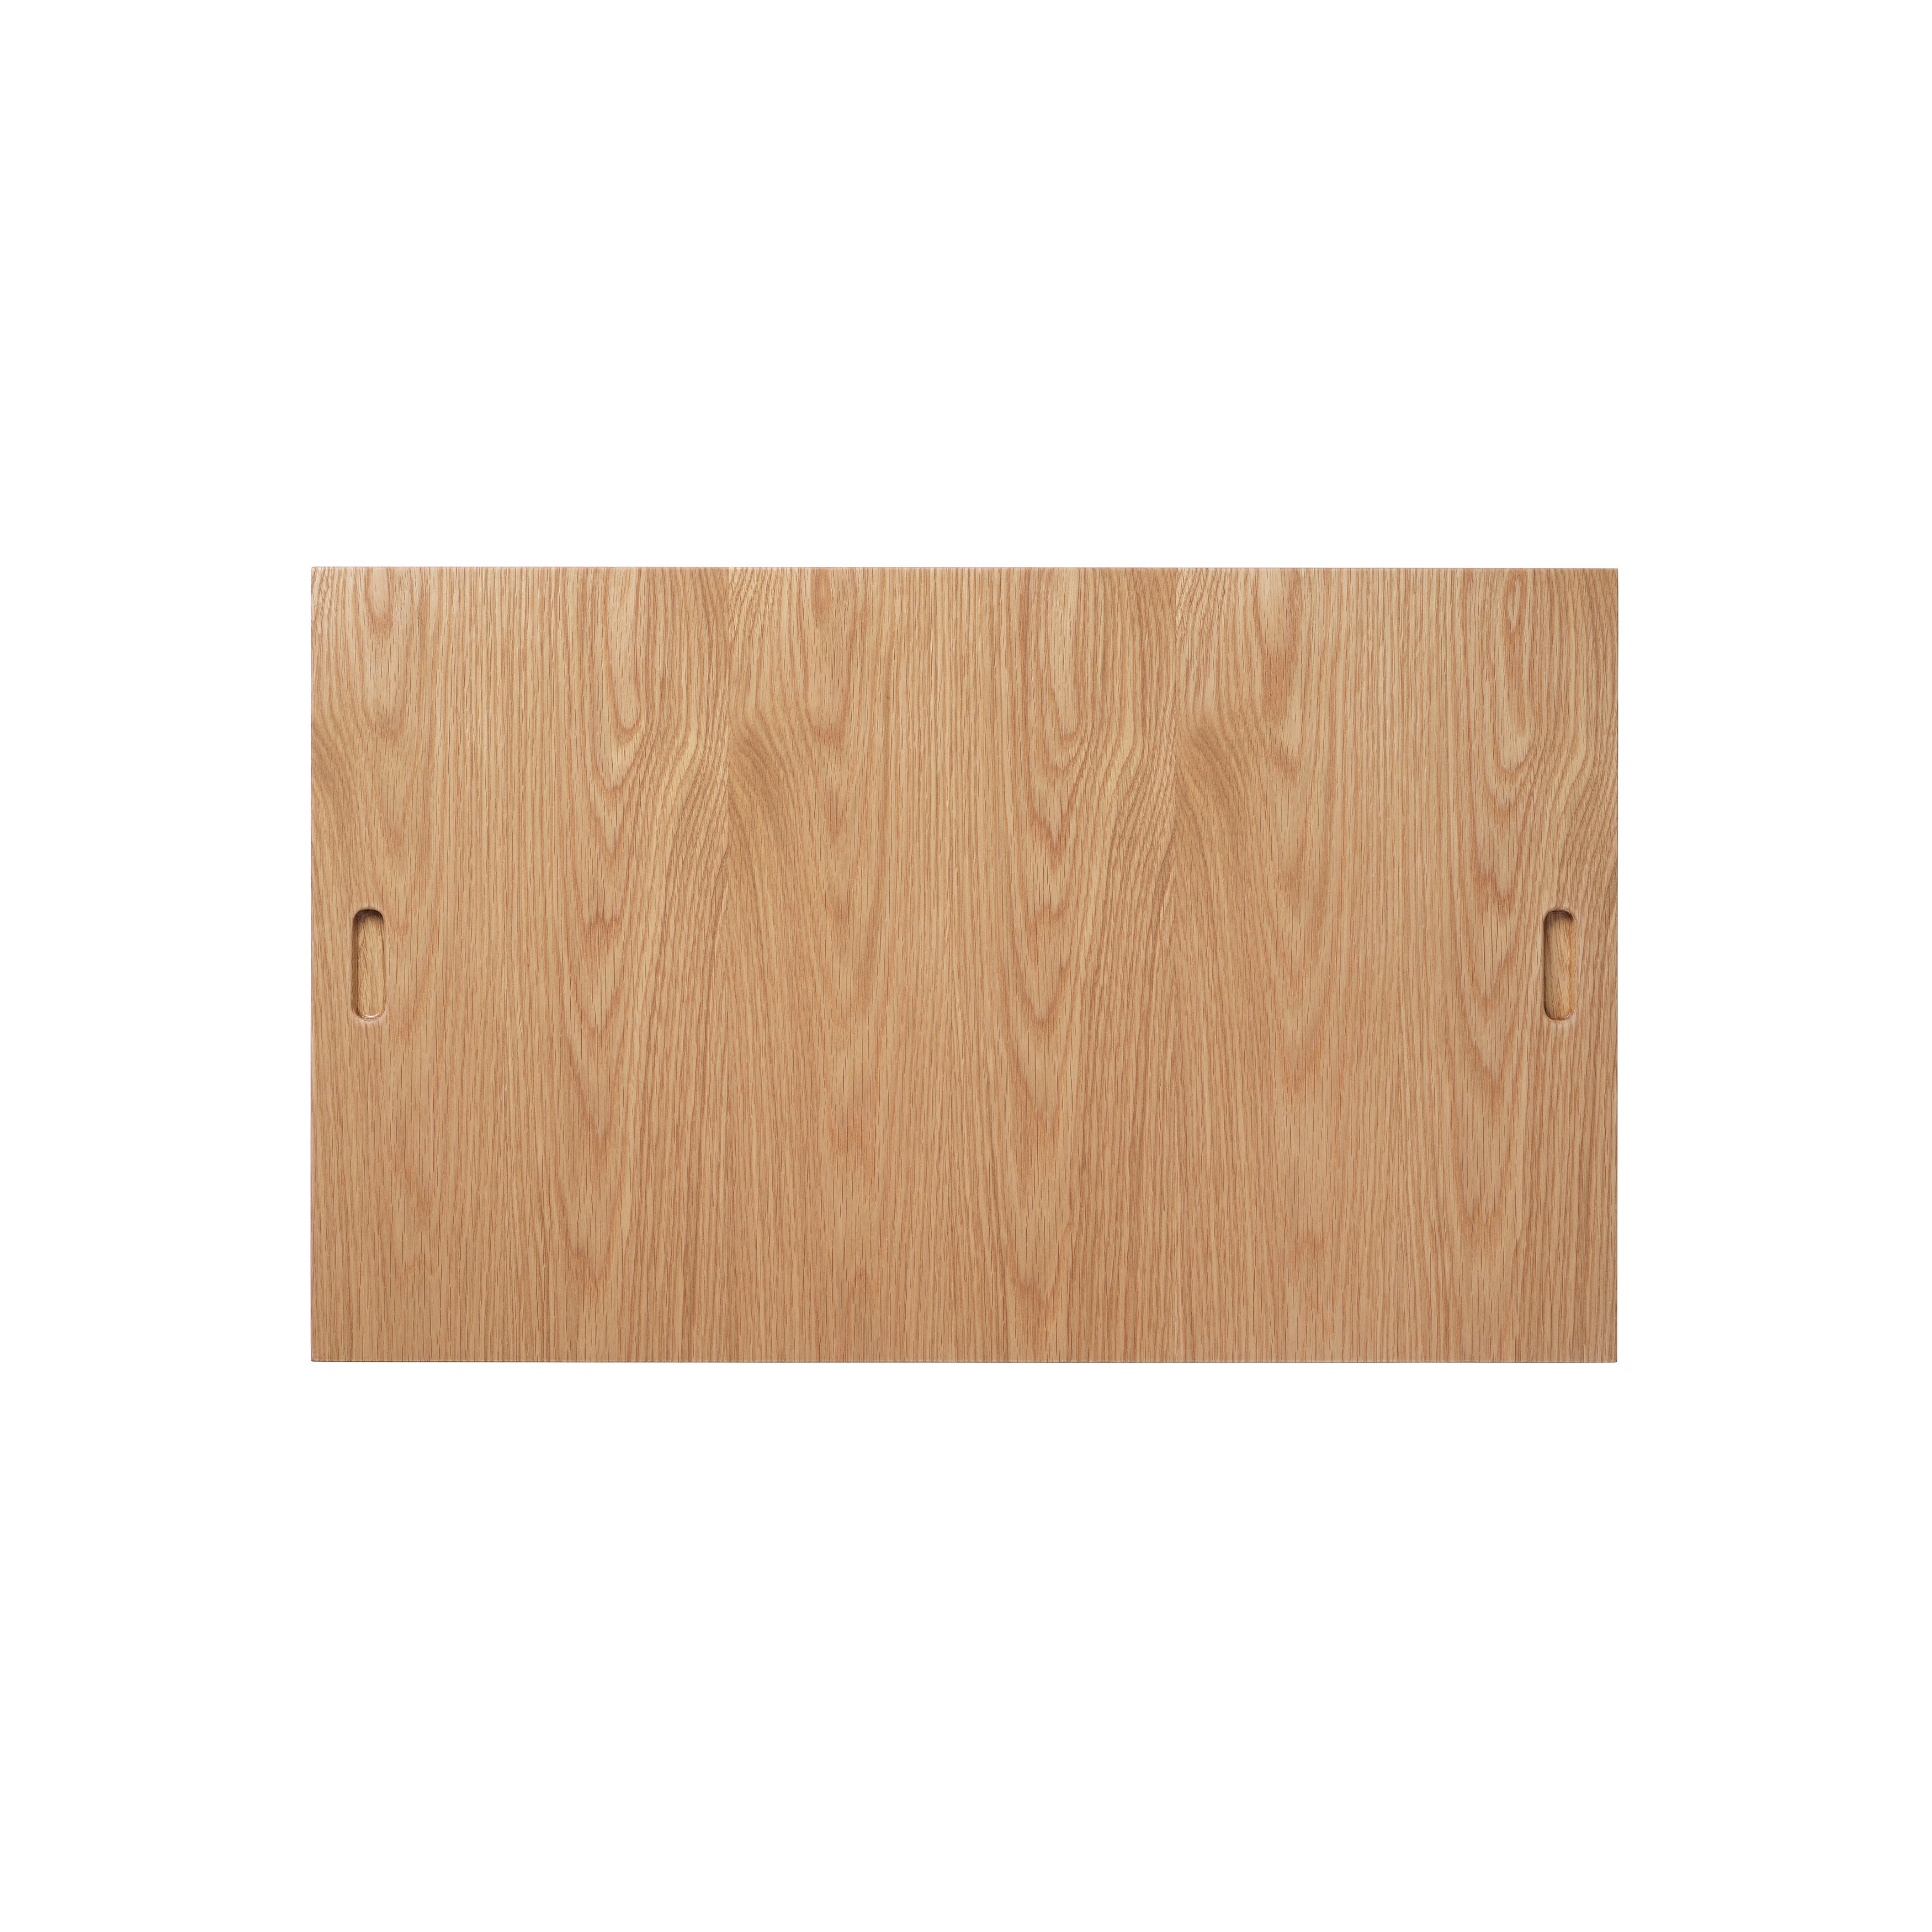 BM0253-1 Shelving System: White Oiled Oak